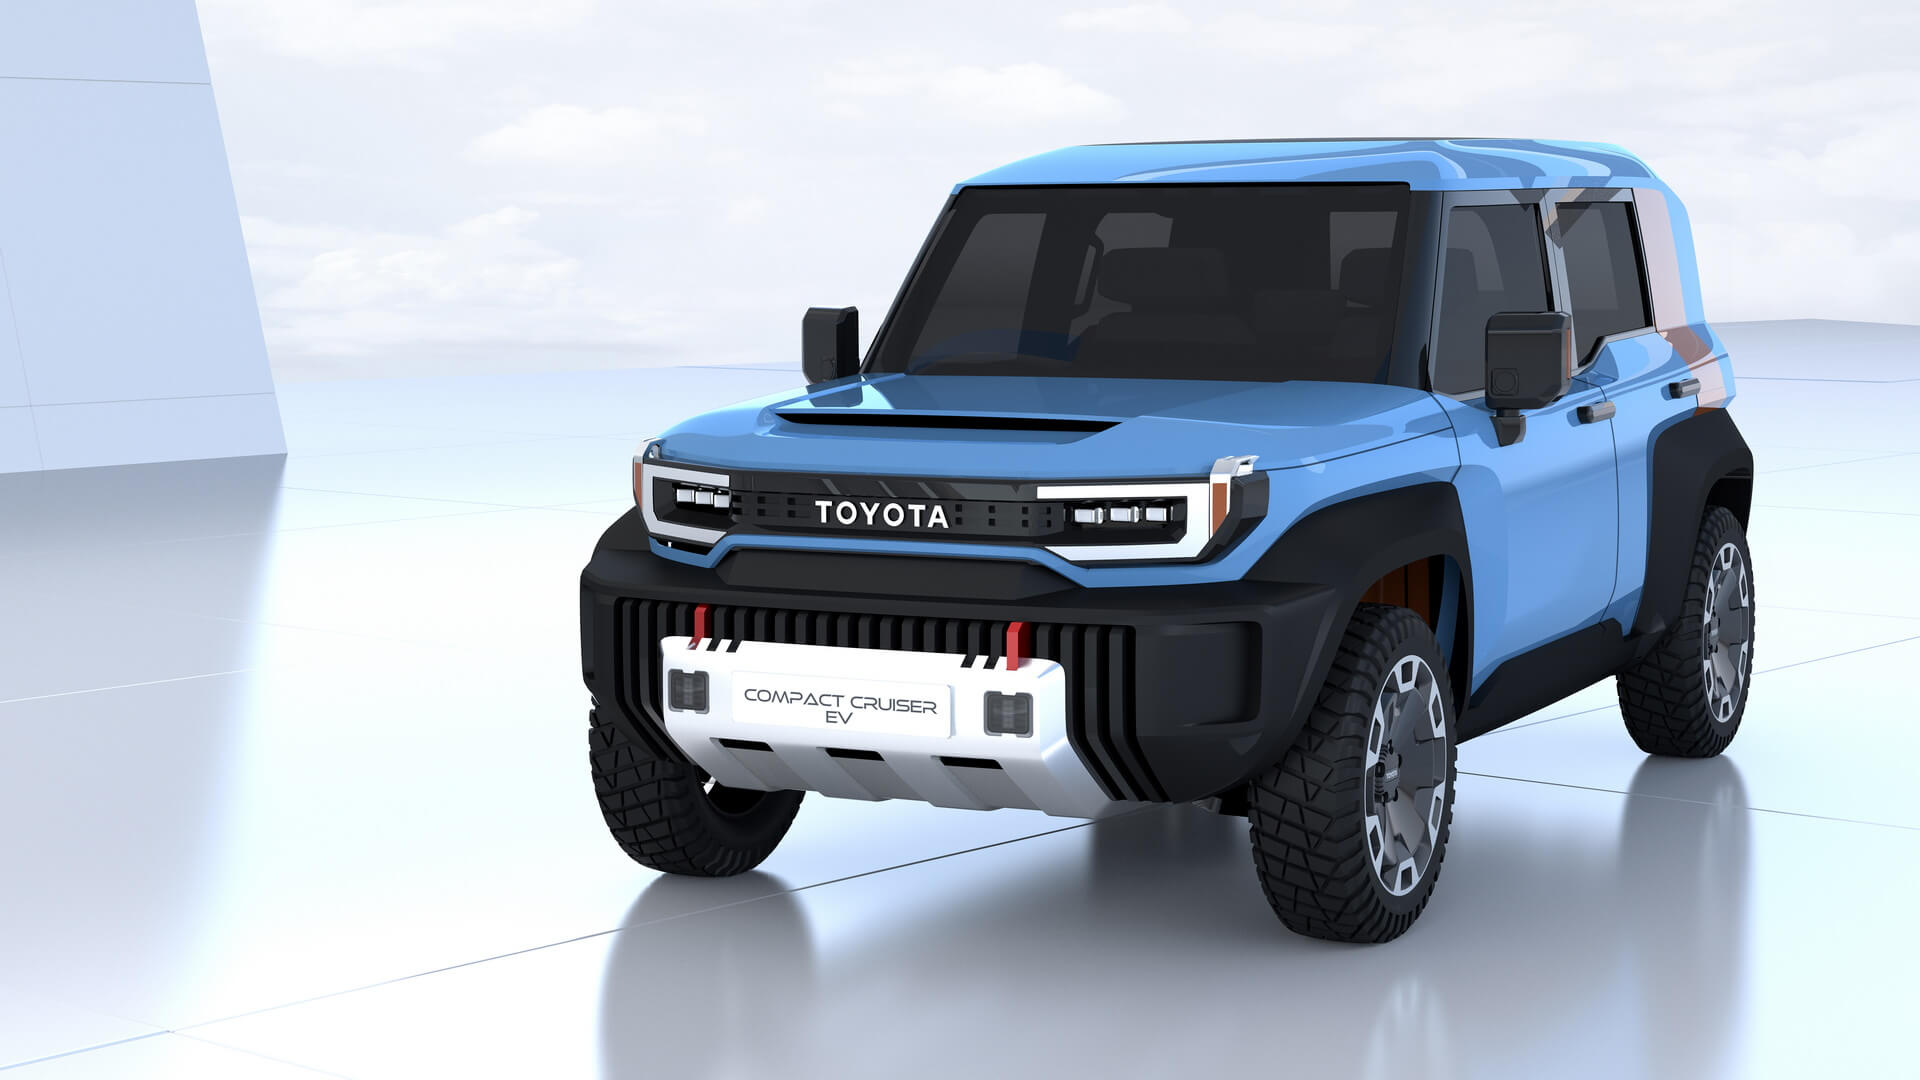 Toyota Compact Cruiser EV: kereta elektrik yang boleh menjadi pengganti Toyota FJ Cruiser